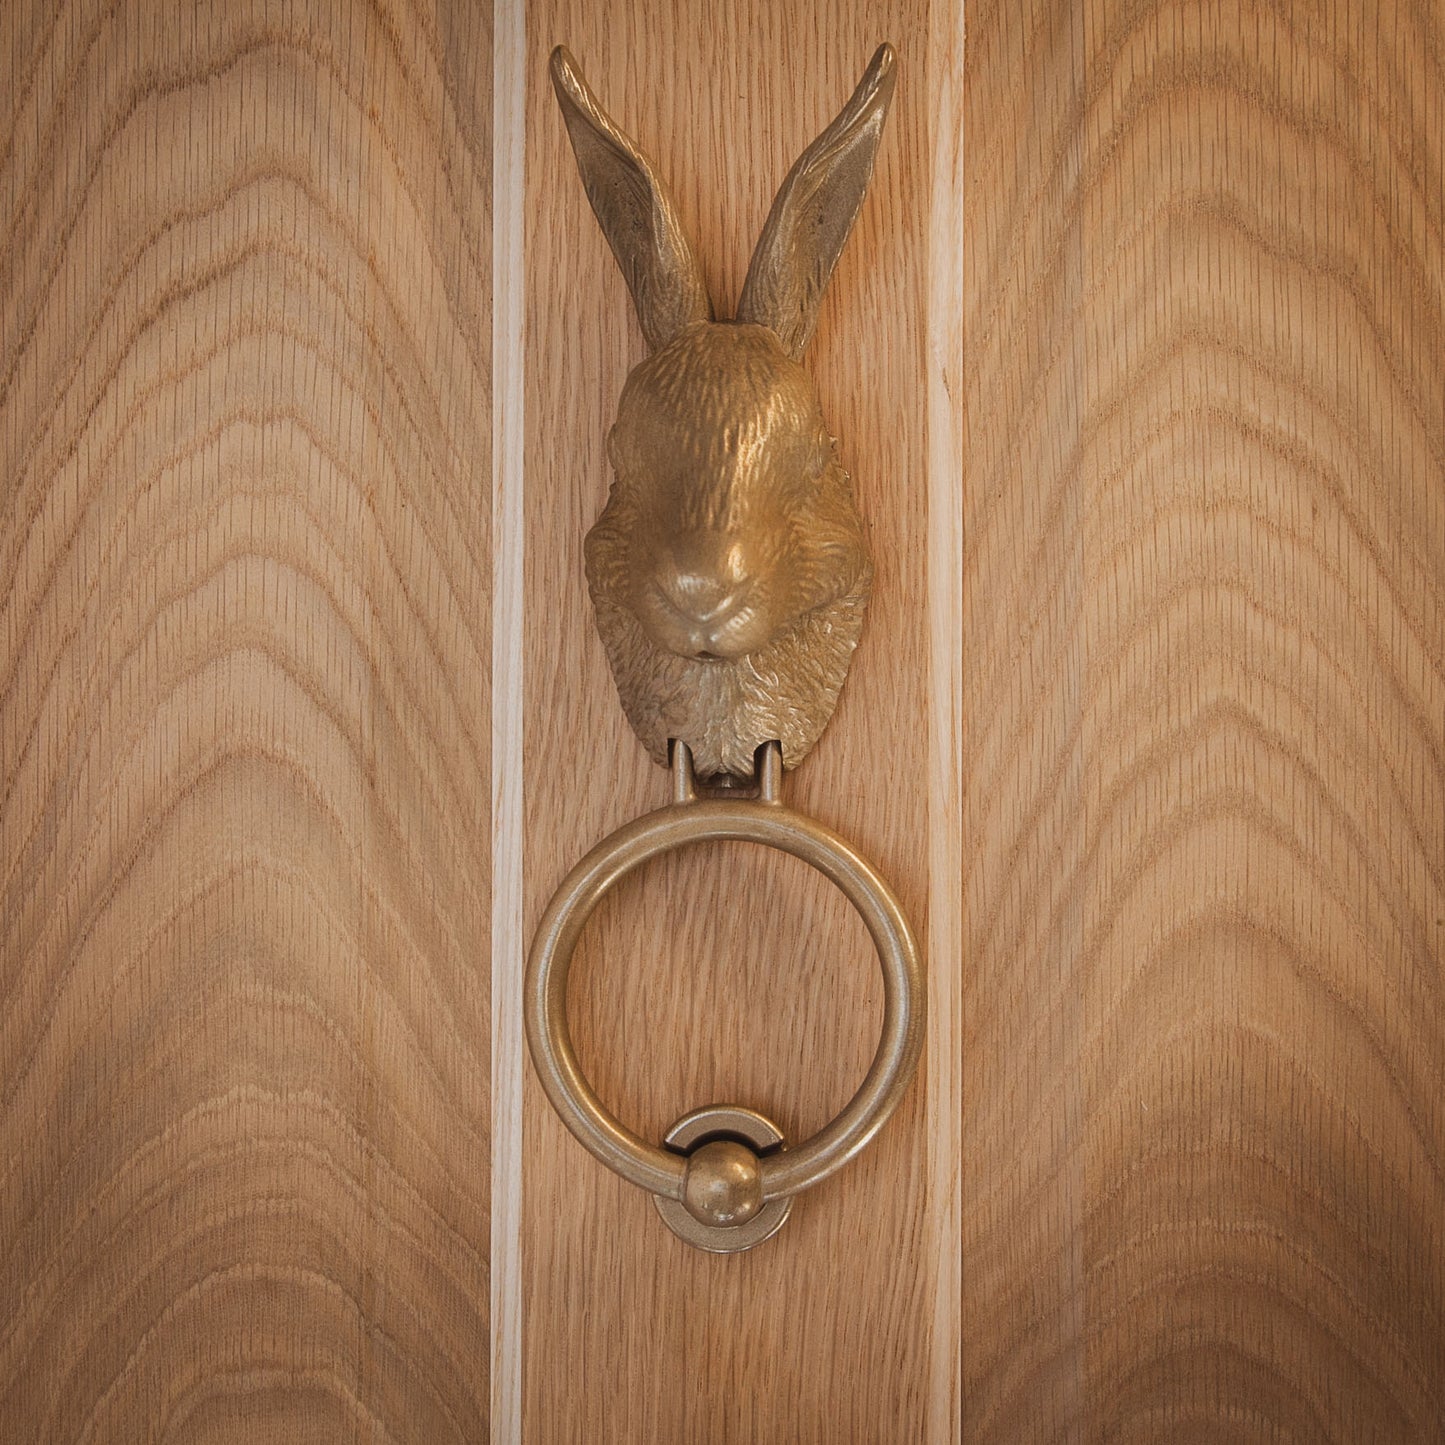 Hare Door Knocker